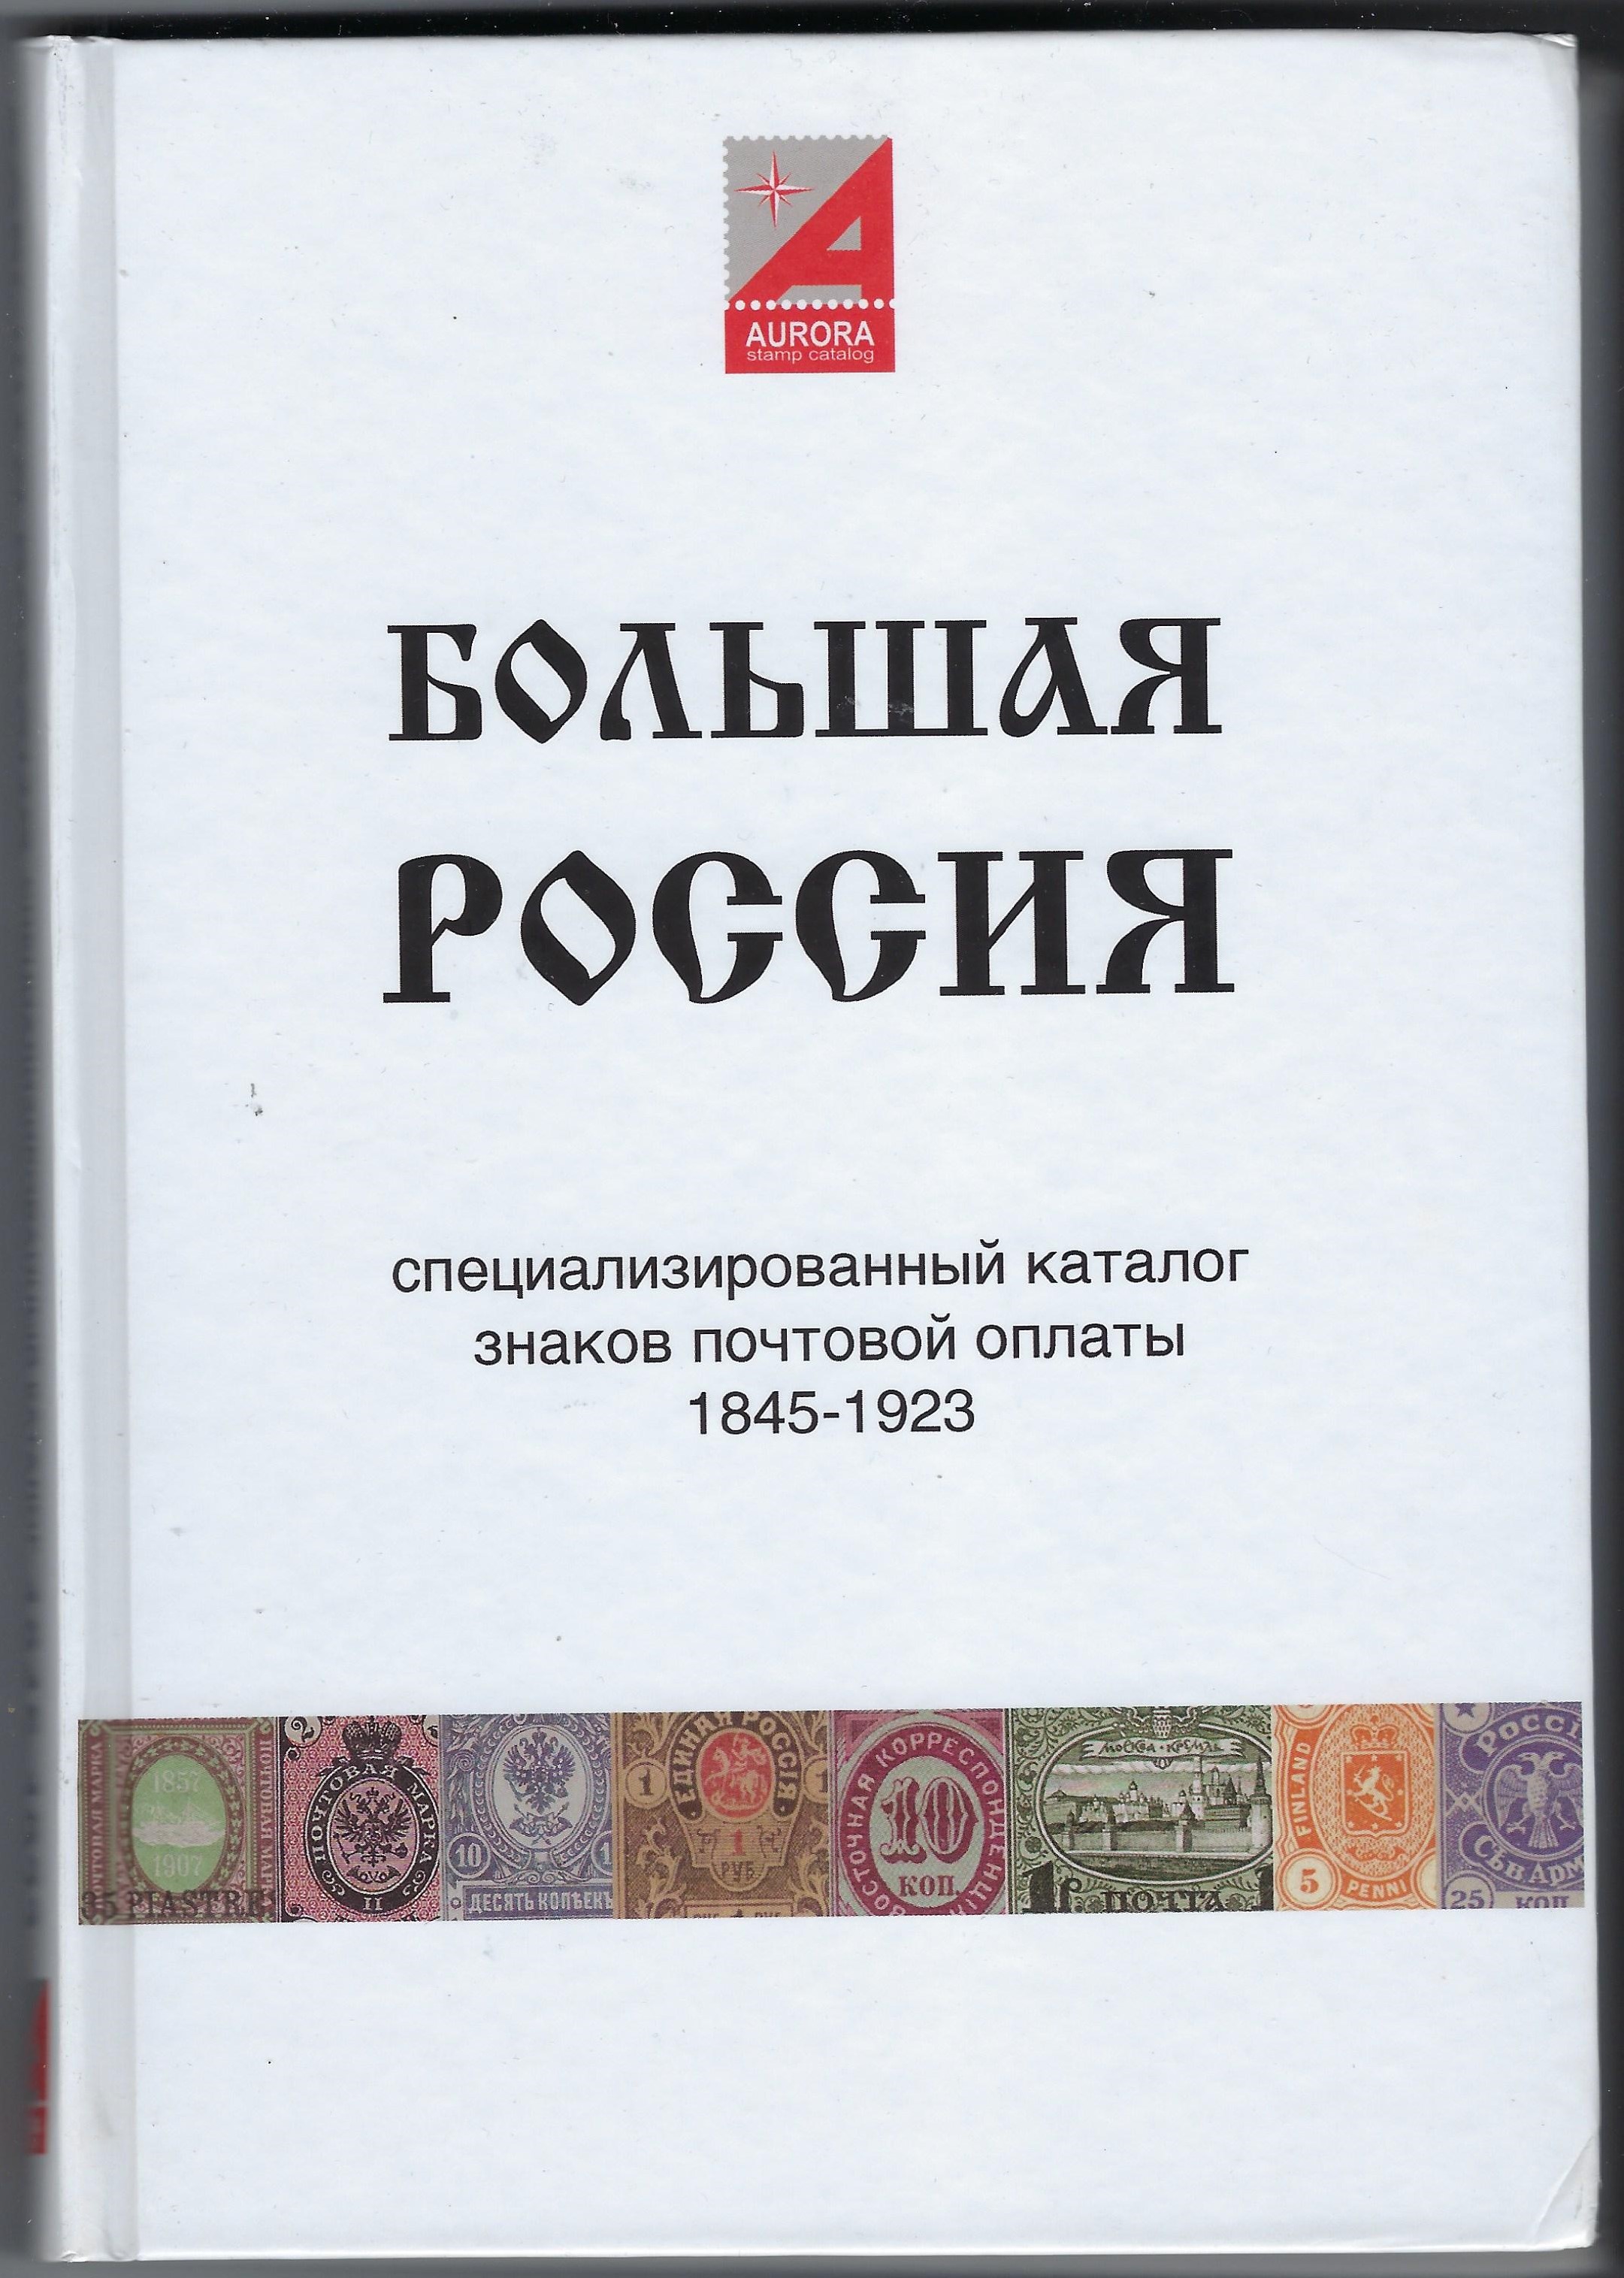 Philatelic Literature IMPERIAL RUSSIA 